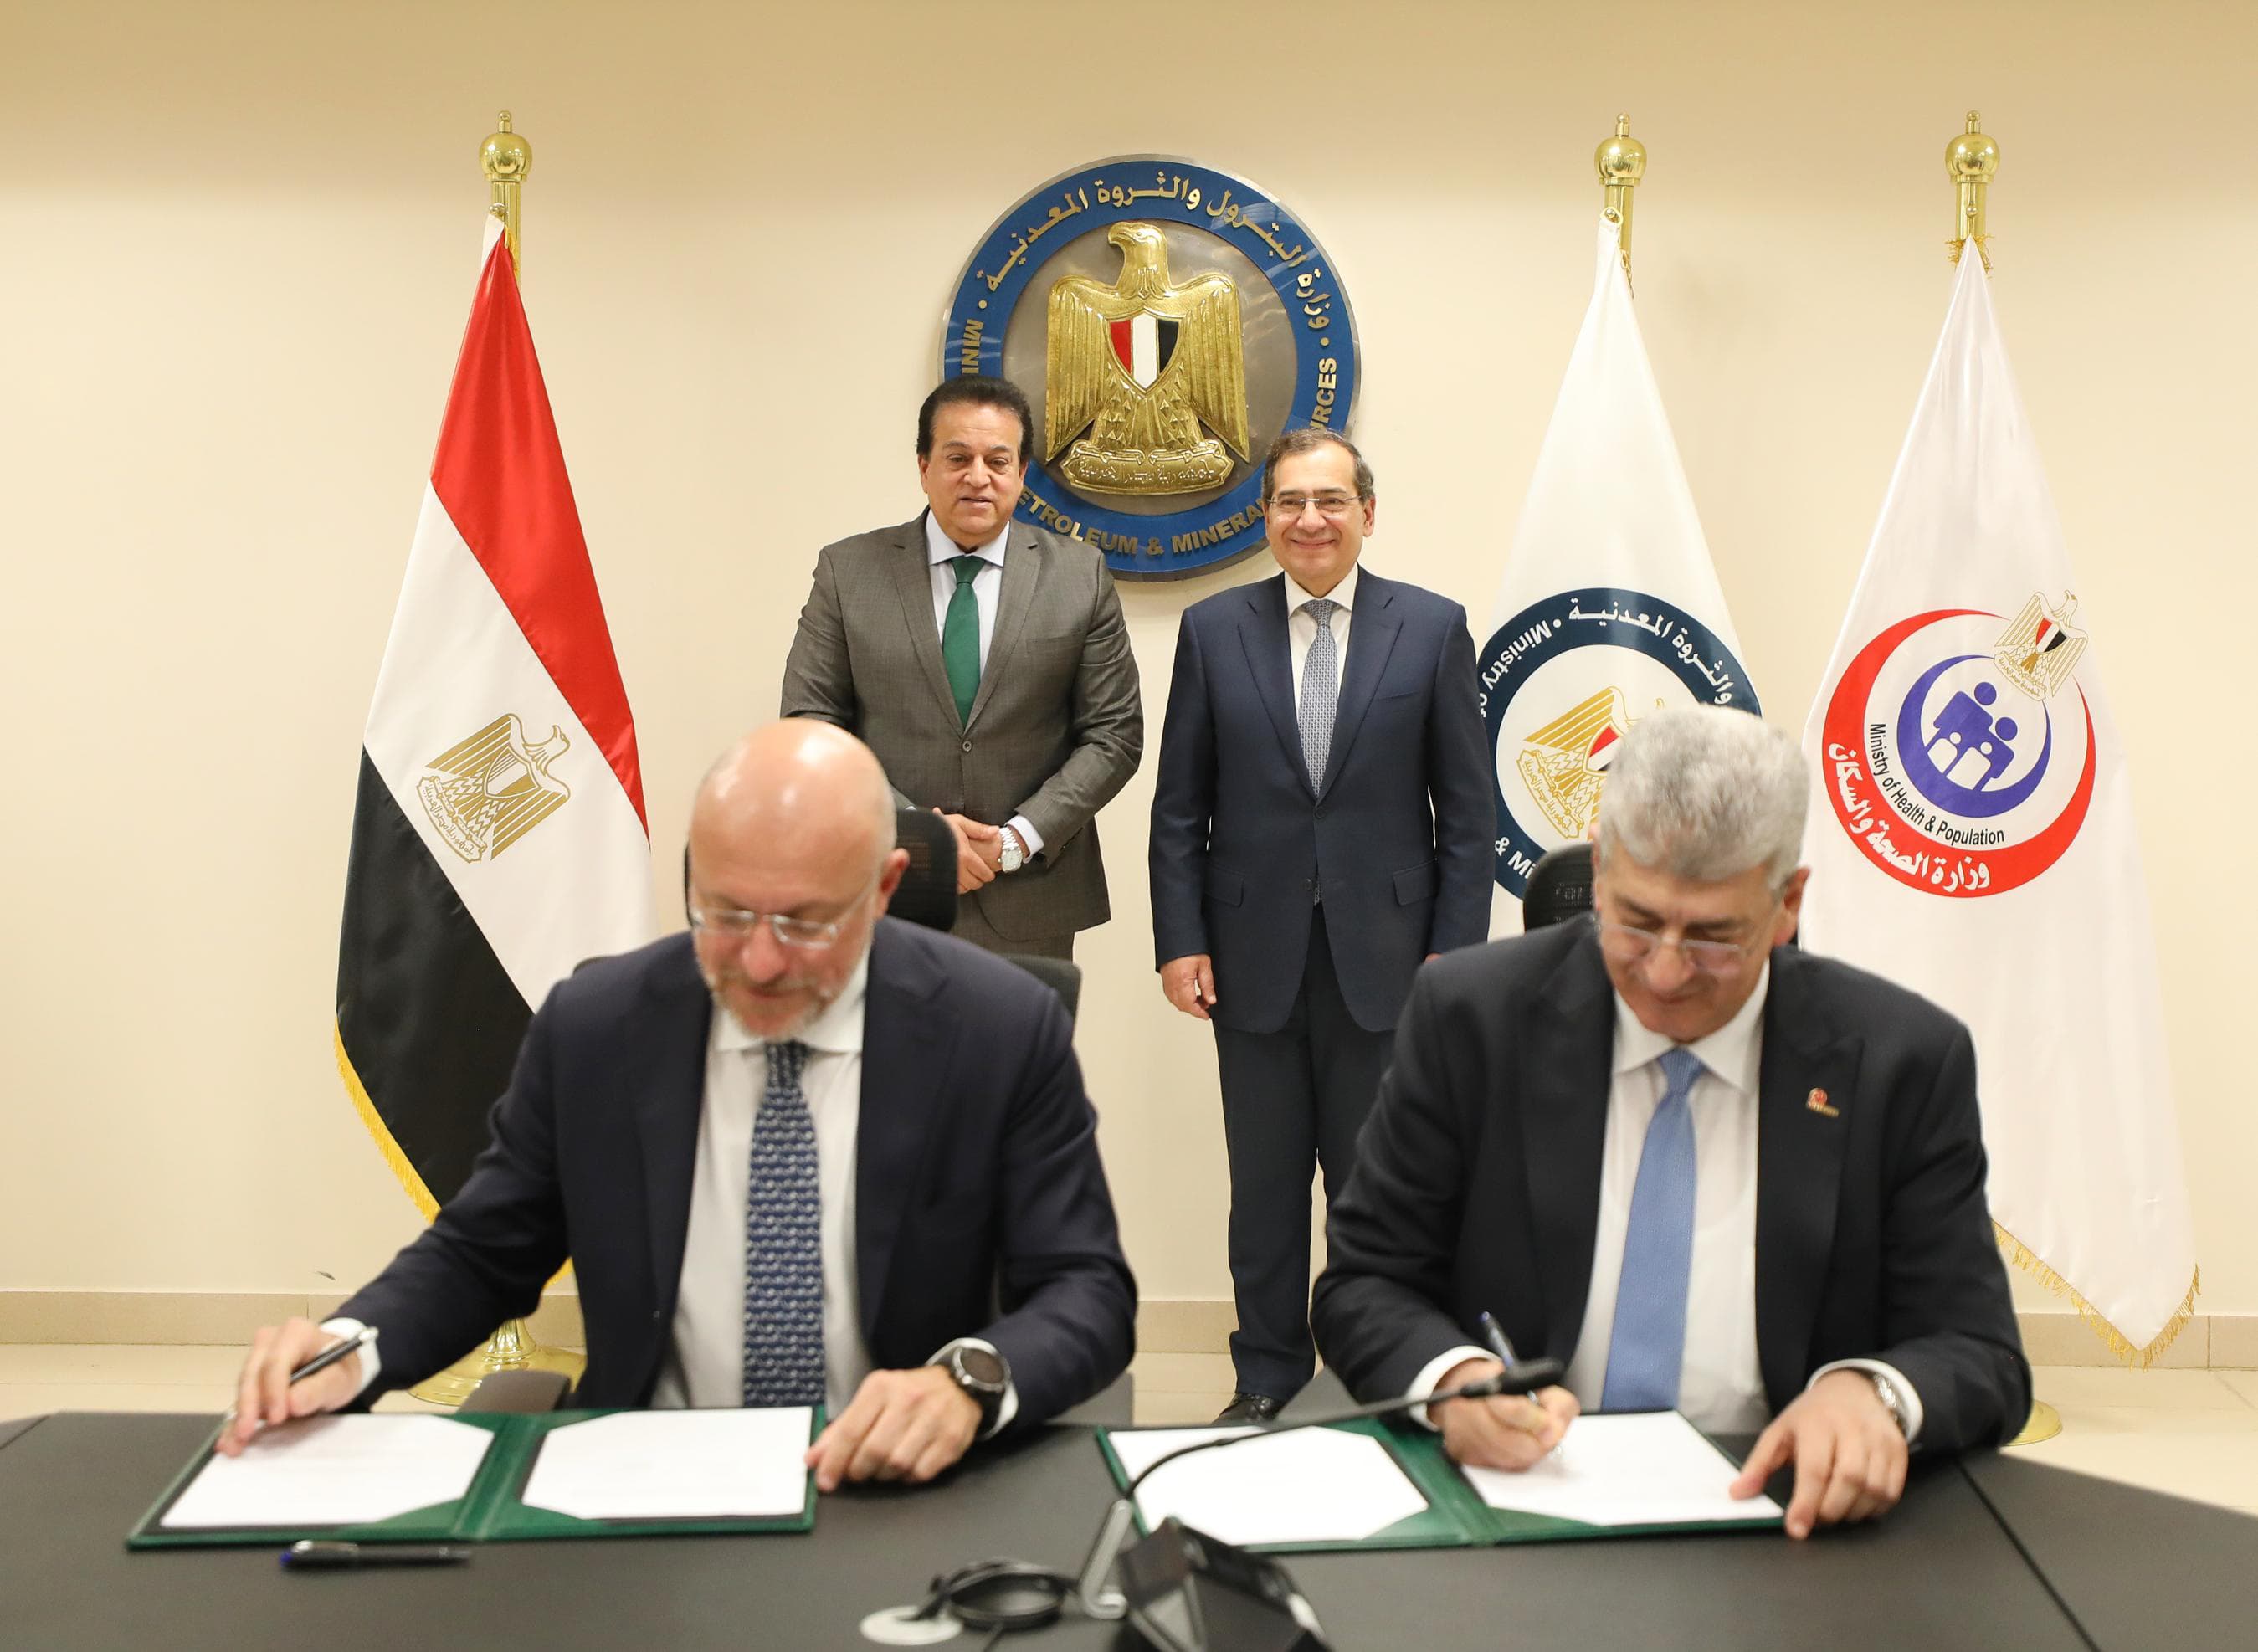 وزيرا البترول والصحة يشهدان توقيع الاتفاقية بشأن تجديد وتطوير قسم الحروق بمستشفى السلام ببورسعيد